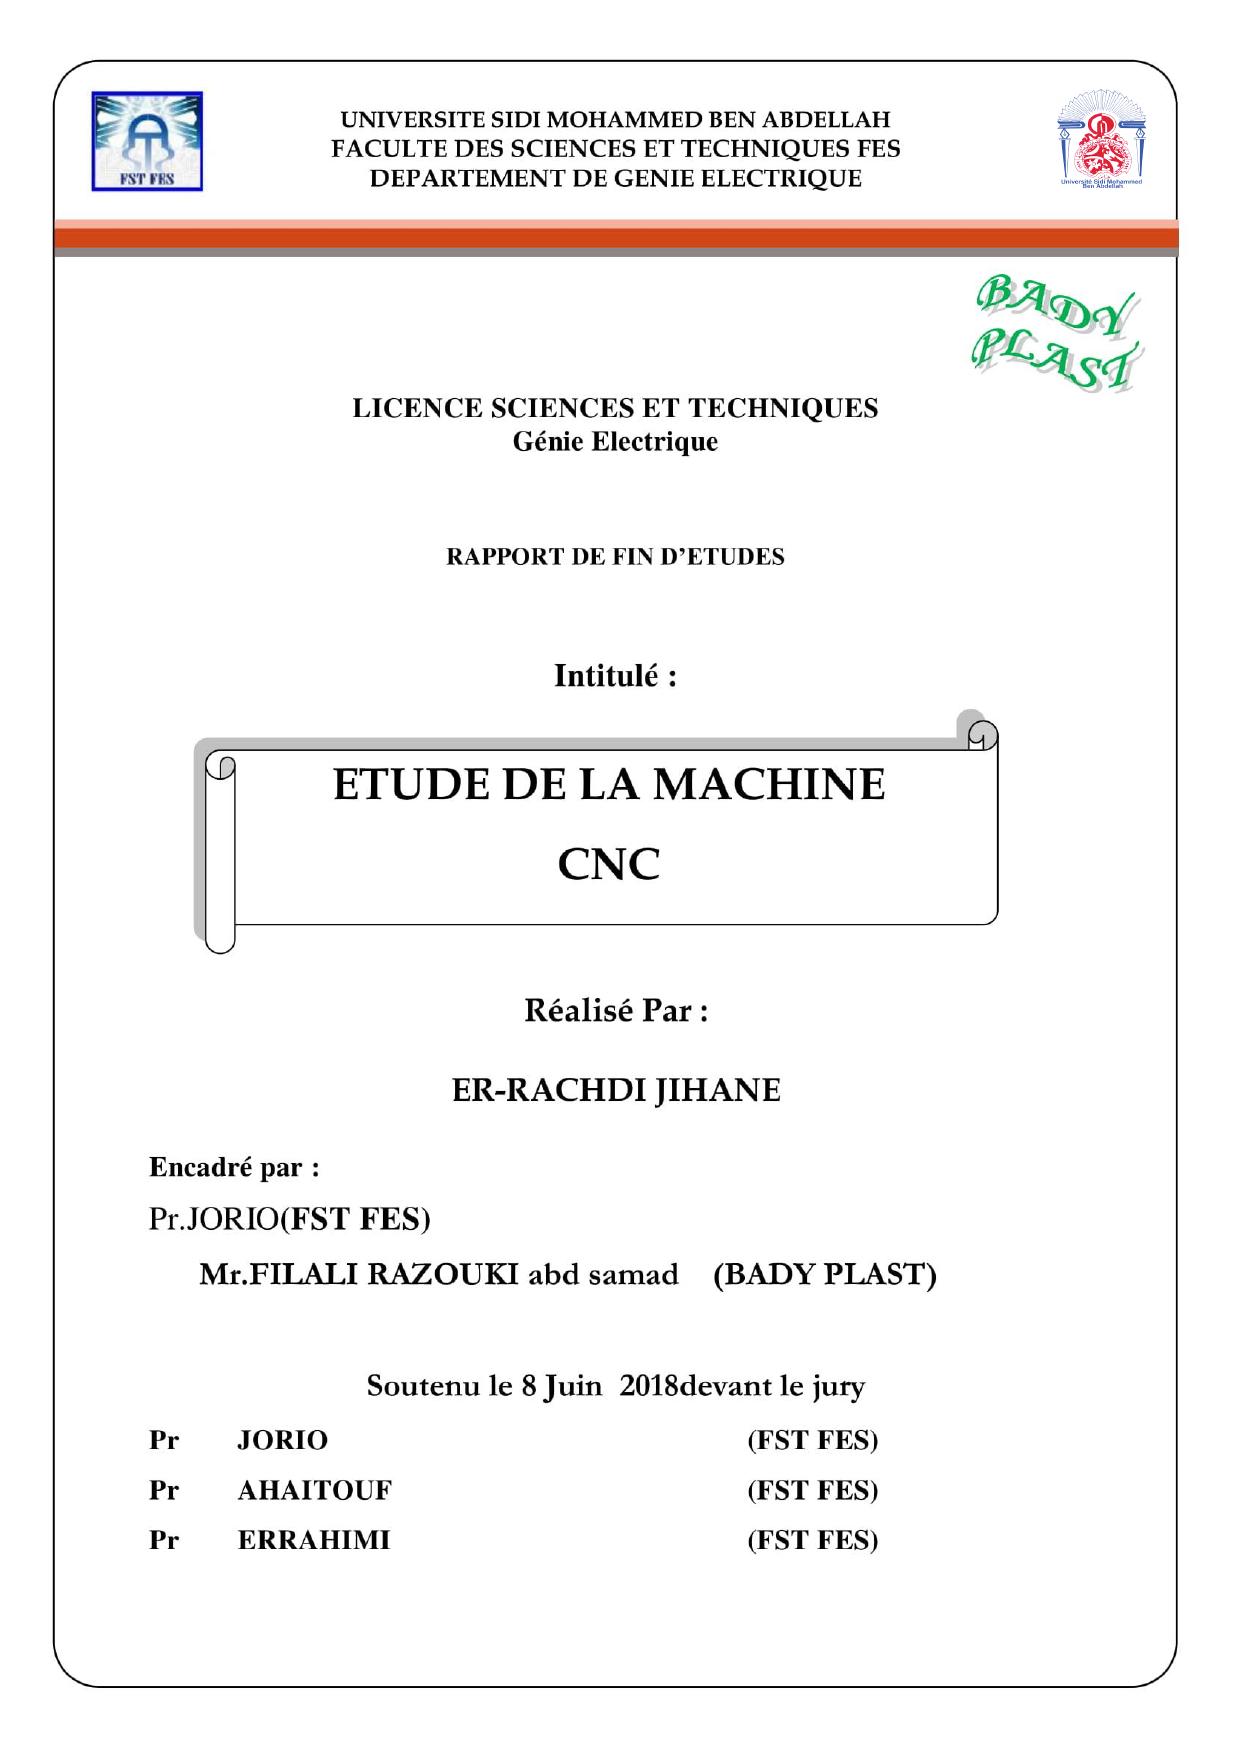 Etude de la machine CNC